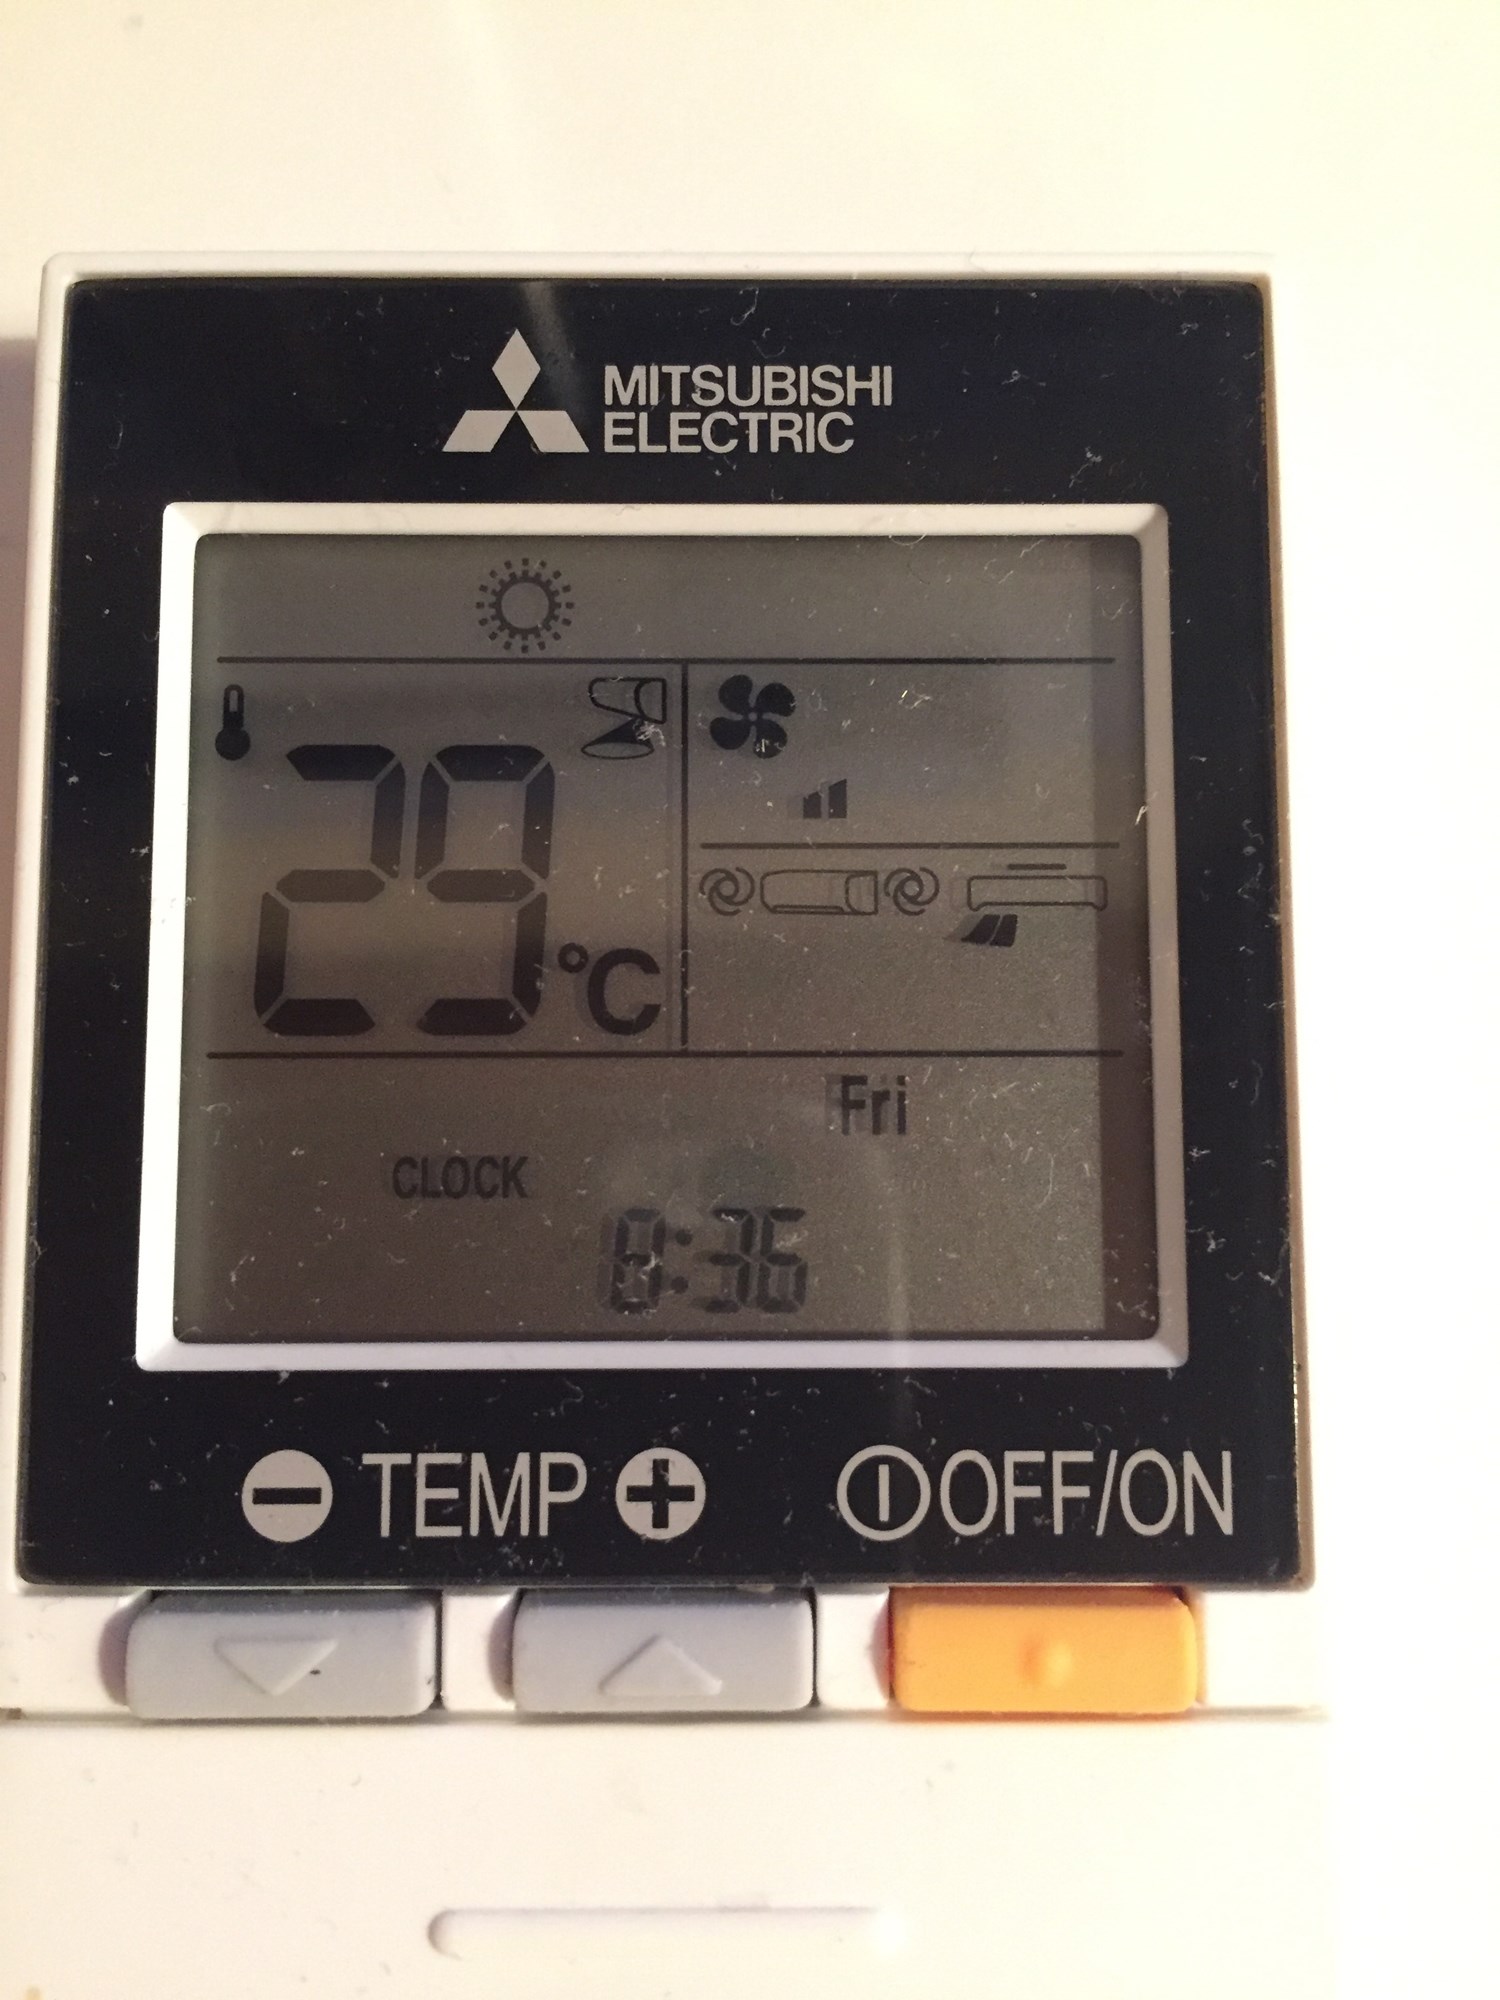 Strømregningen har skutt i været etter vi fikk varmepumpe. Er det normalt? - image.jpg - acedynamite